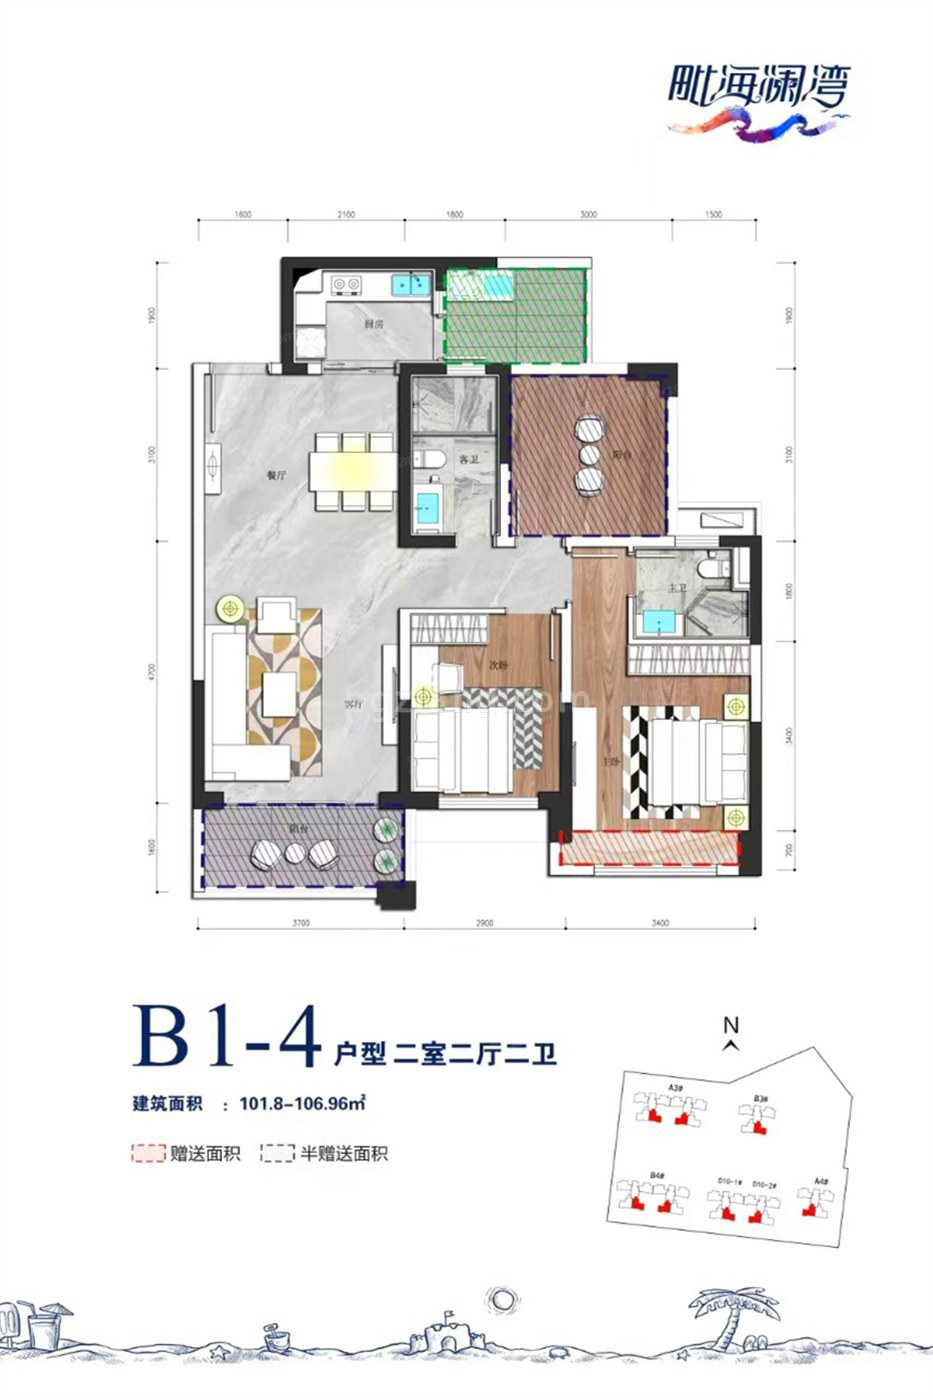 高层 B1-4户型 2室2厅2卫 建筑面积101.80-106.96㎡